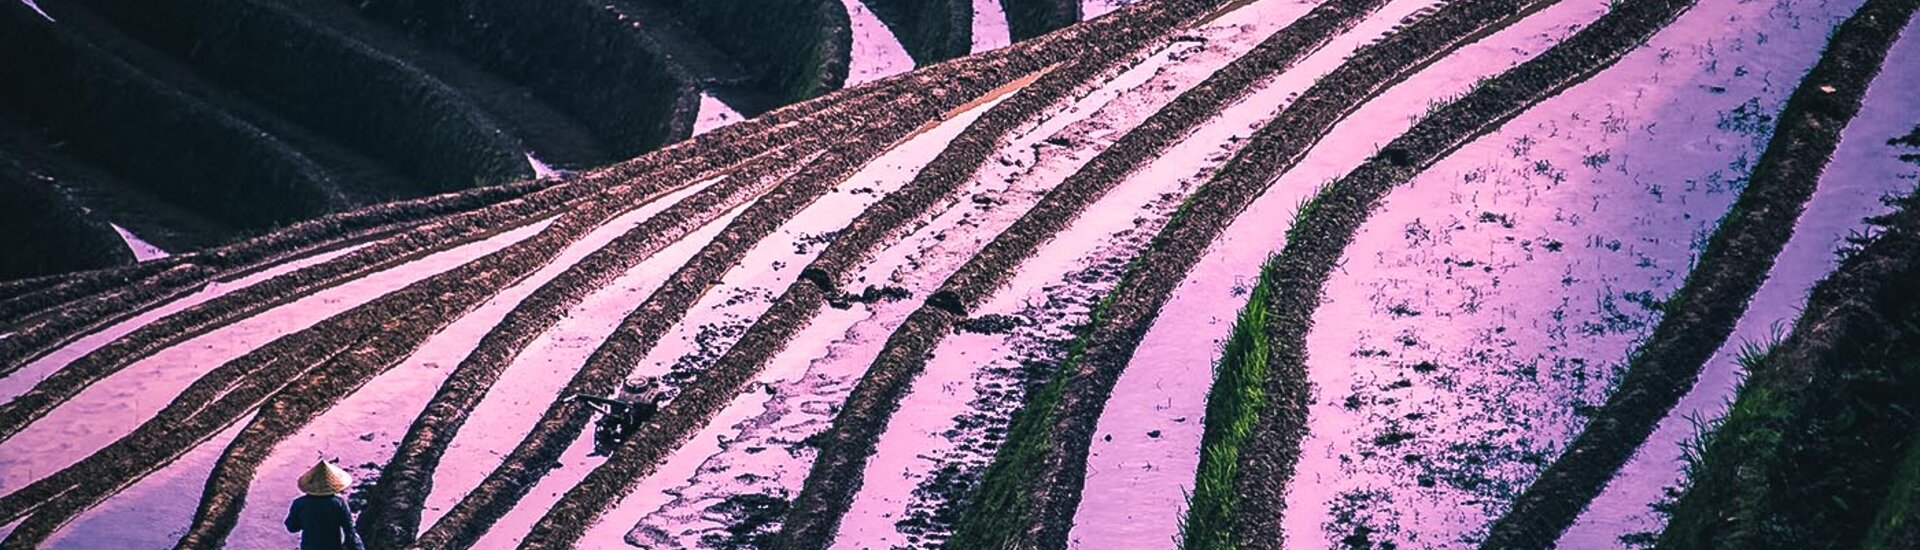 Farbenspiel der Reisterrassen in Longsheng